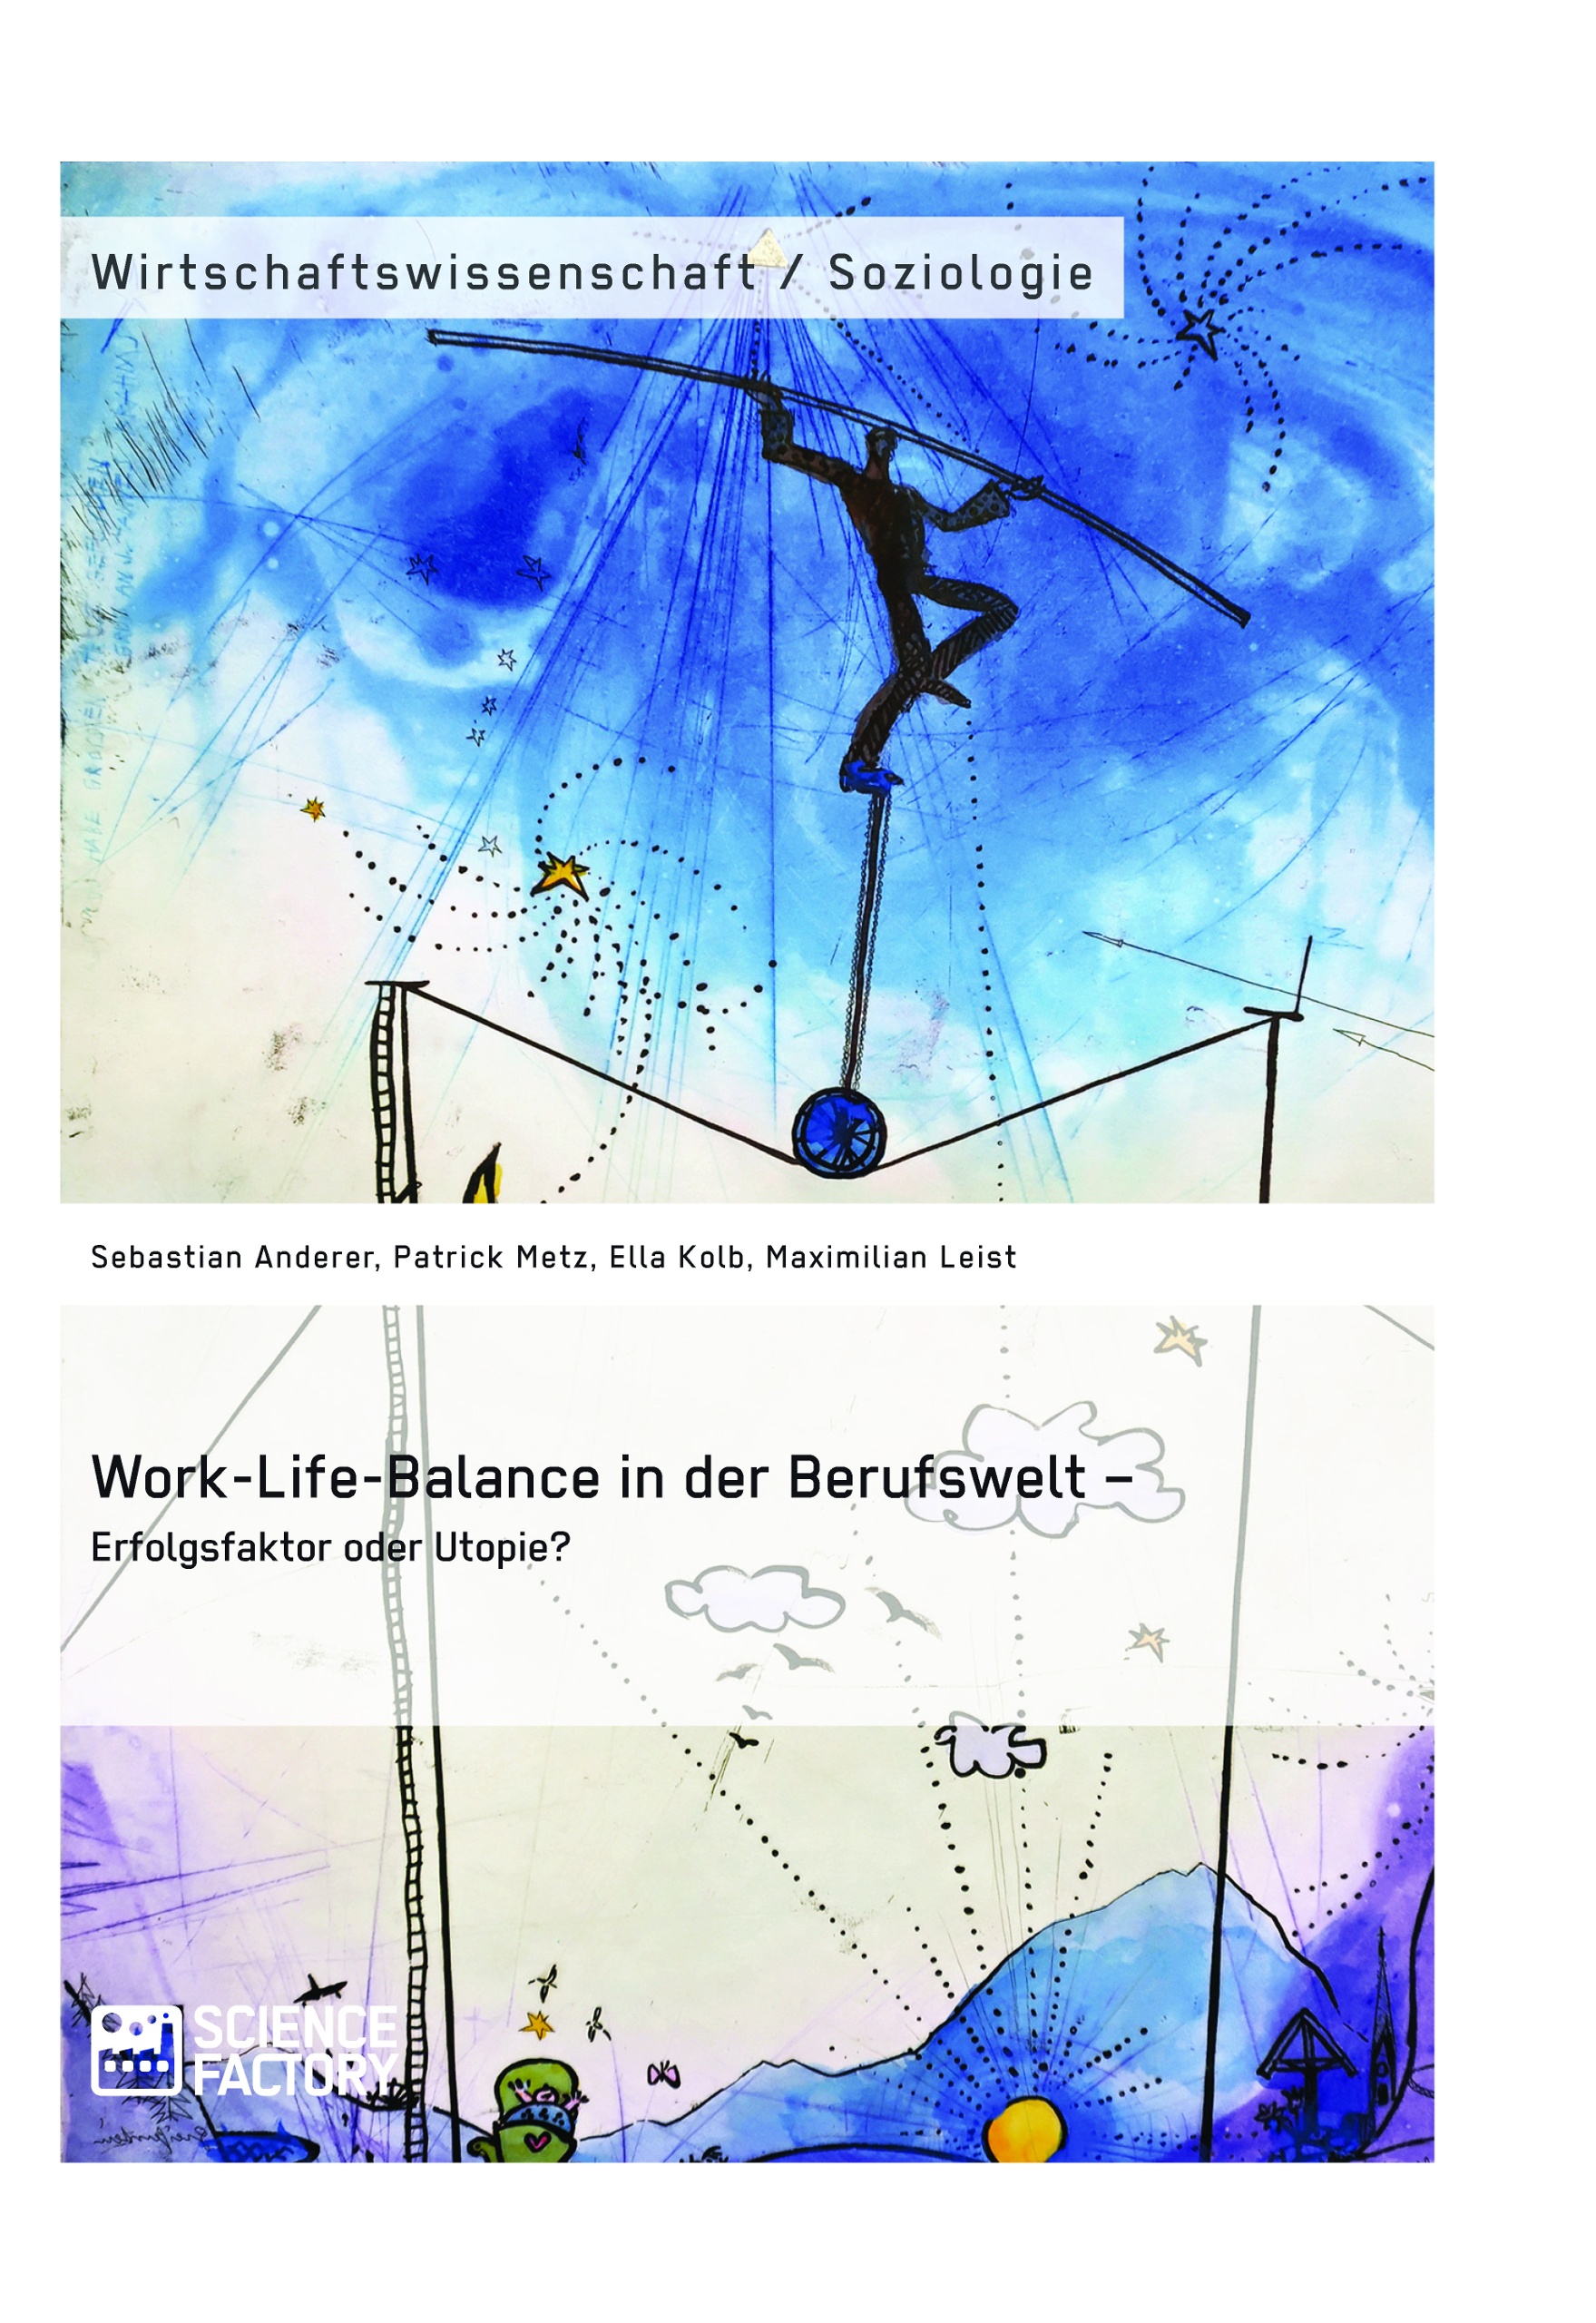 Título: Work-Life-Balance in der Berufswelt – Erfolgsfaktor oder Utopie?